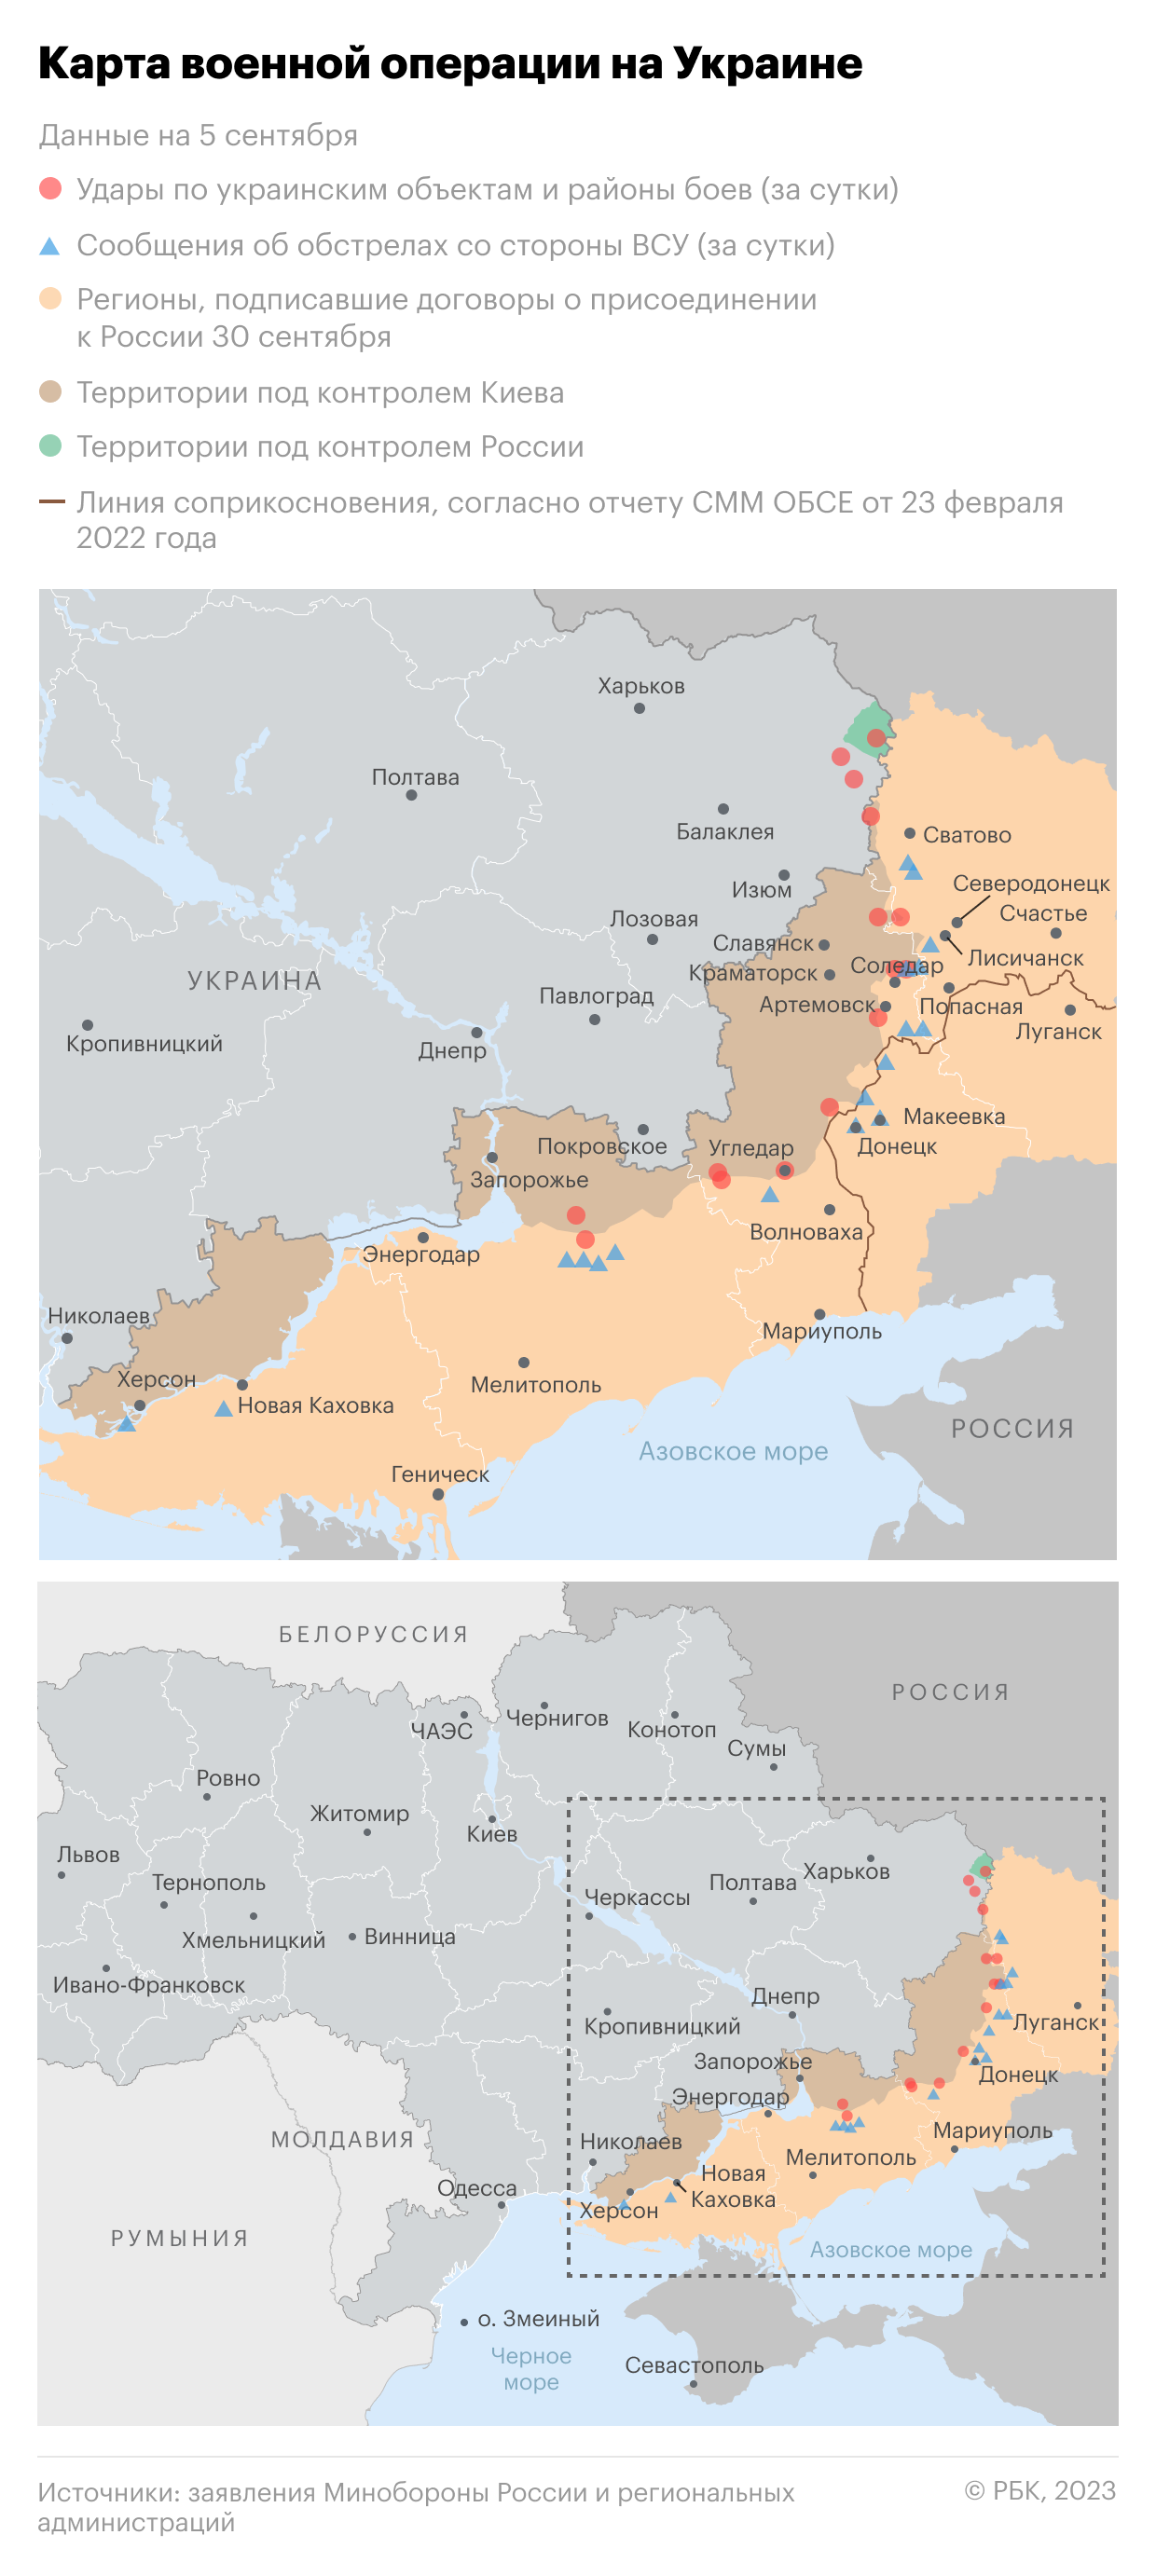 Военная операция на Украине. Карта на 5 сентября